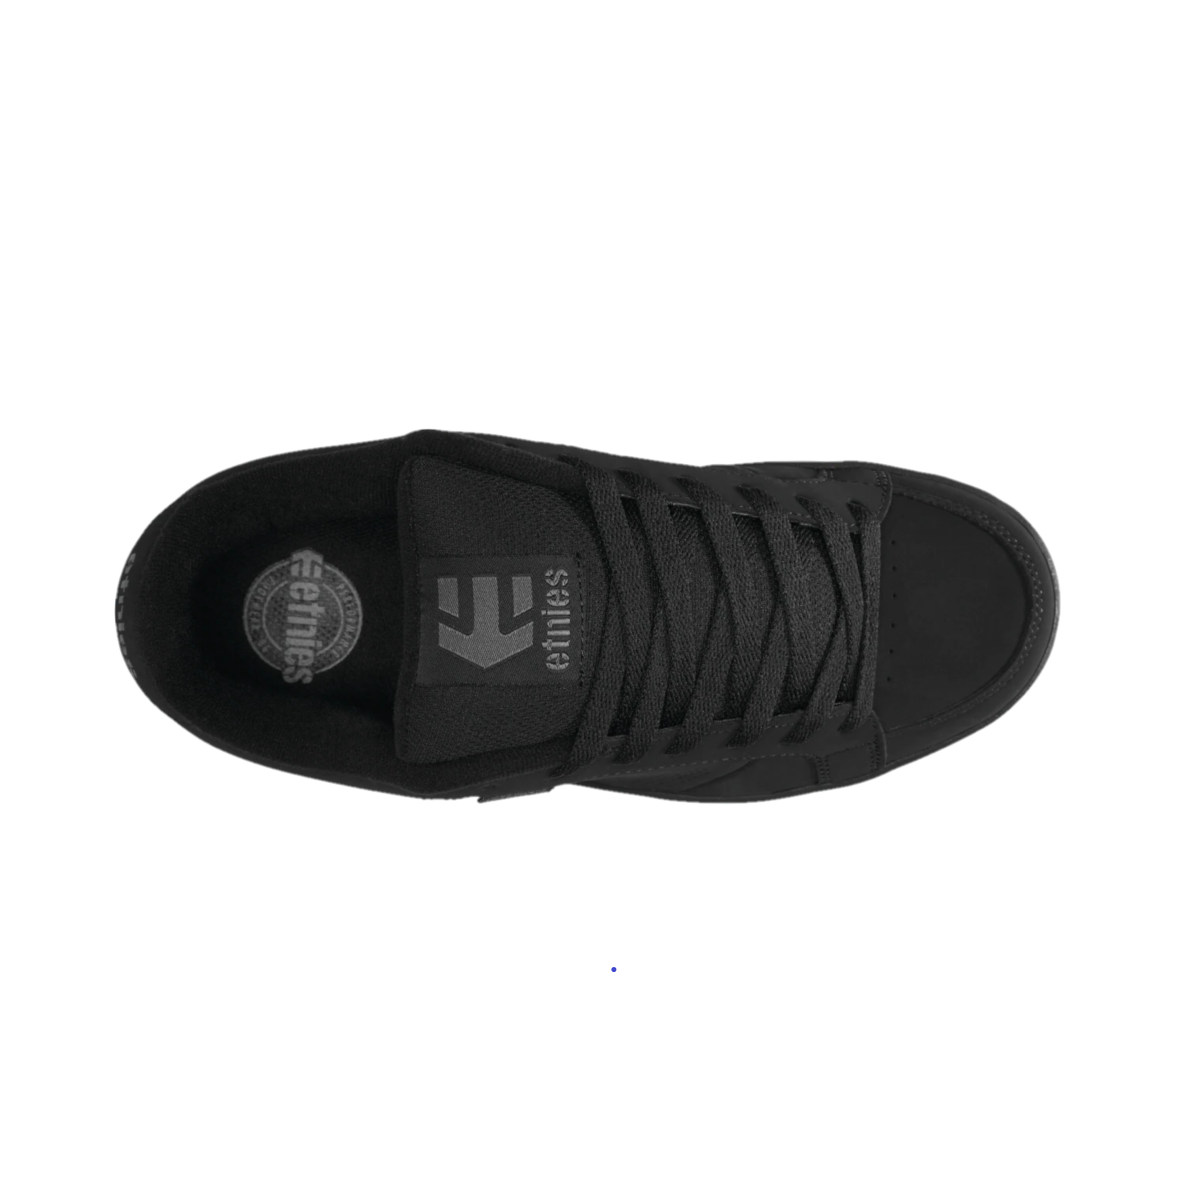 ETNIES 4101000091 003 KINGPIN MN'S (Medium) Black/Black Nubuck & Synthetic Skate Shoes